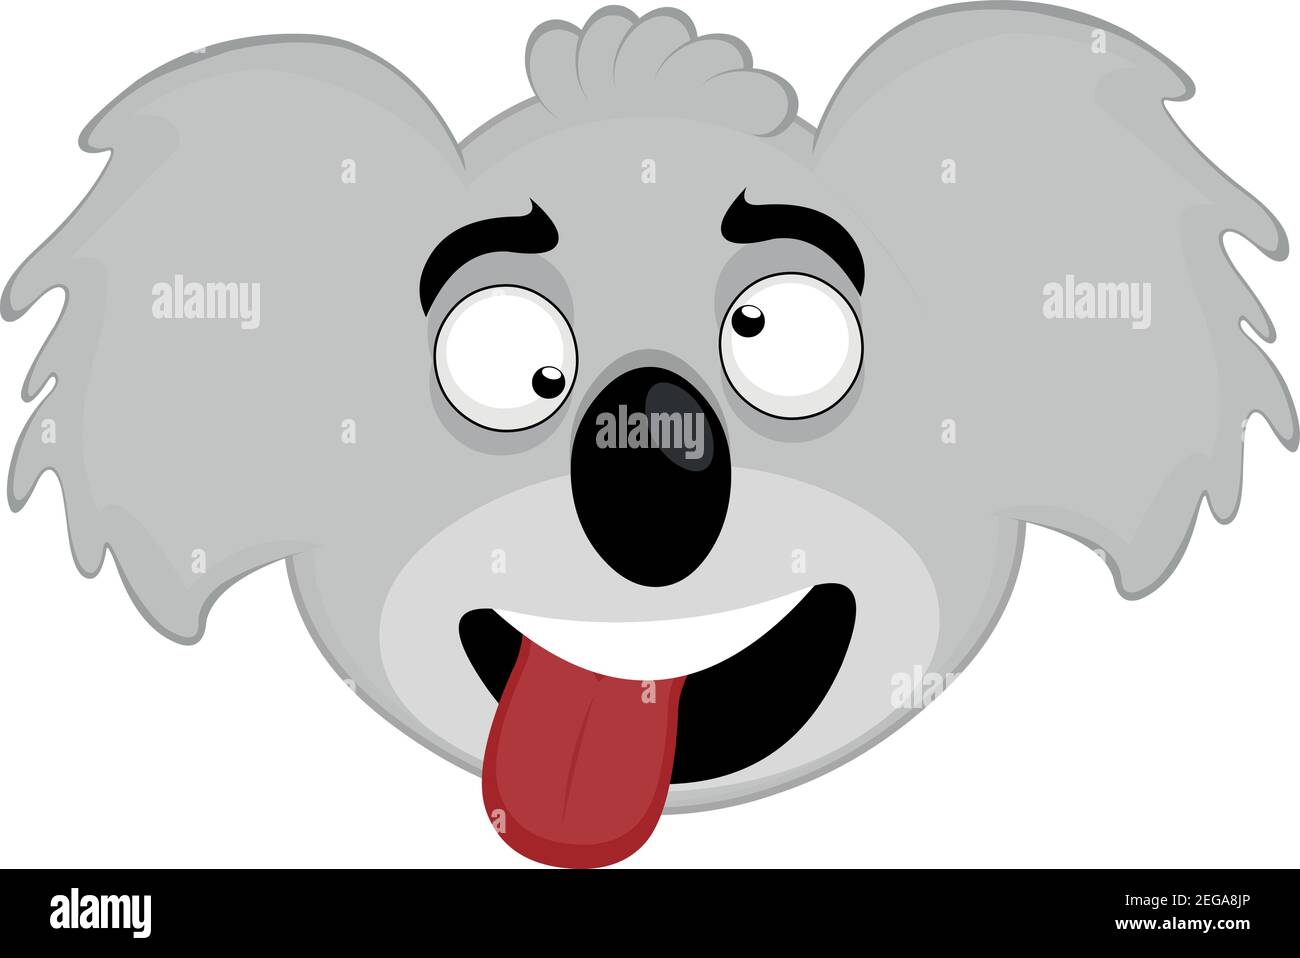 Vector emoticono ilustración de caricatura de la cabeza de un koala con una expresión burlante con ojos salvajes y sacando su lengua con la boca abierta Ilustración del Vector